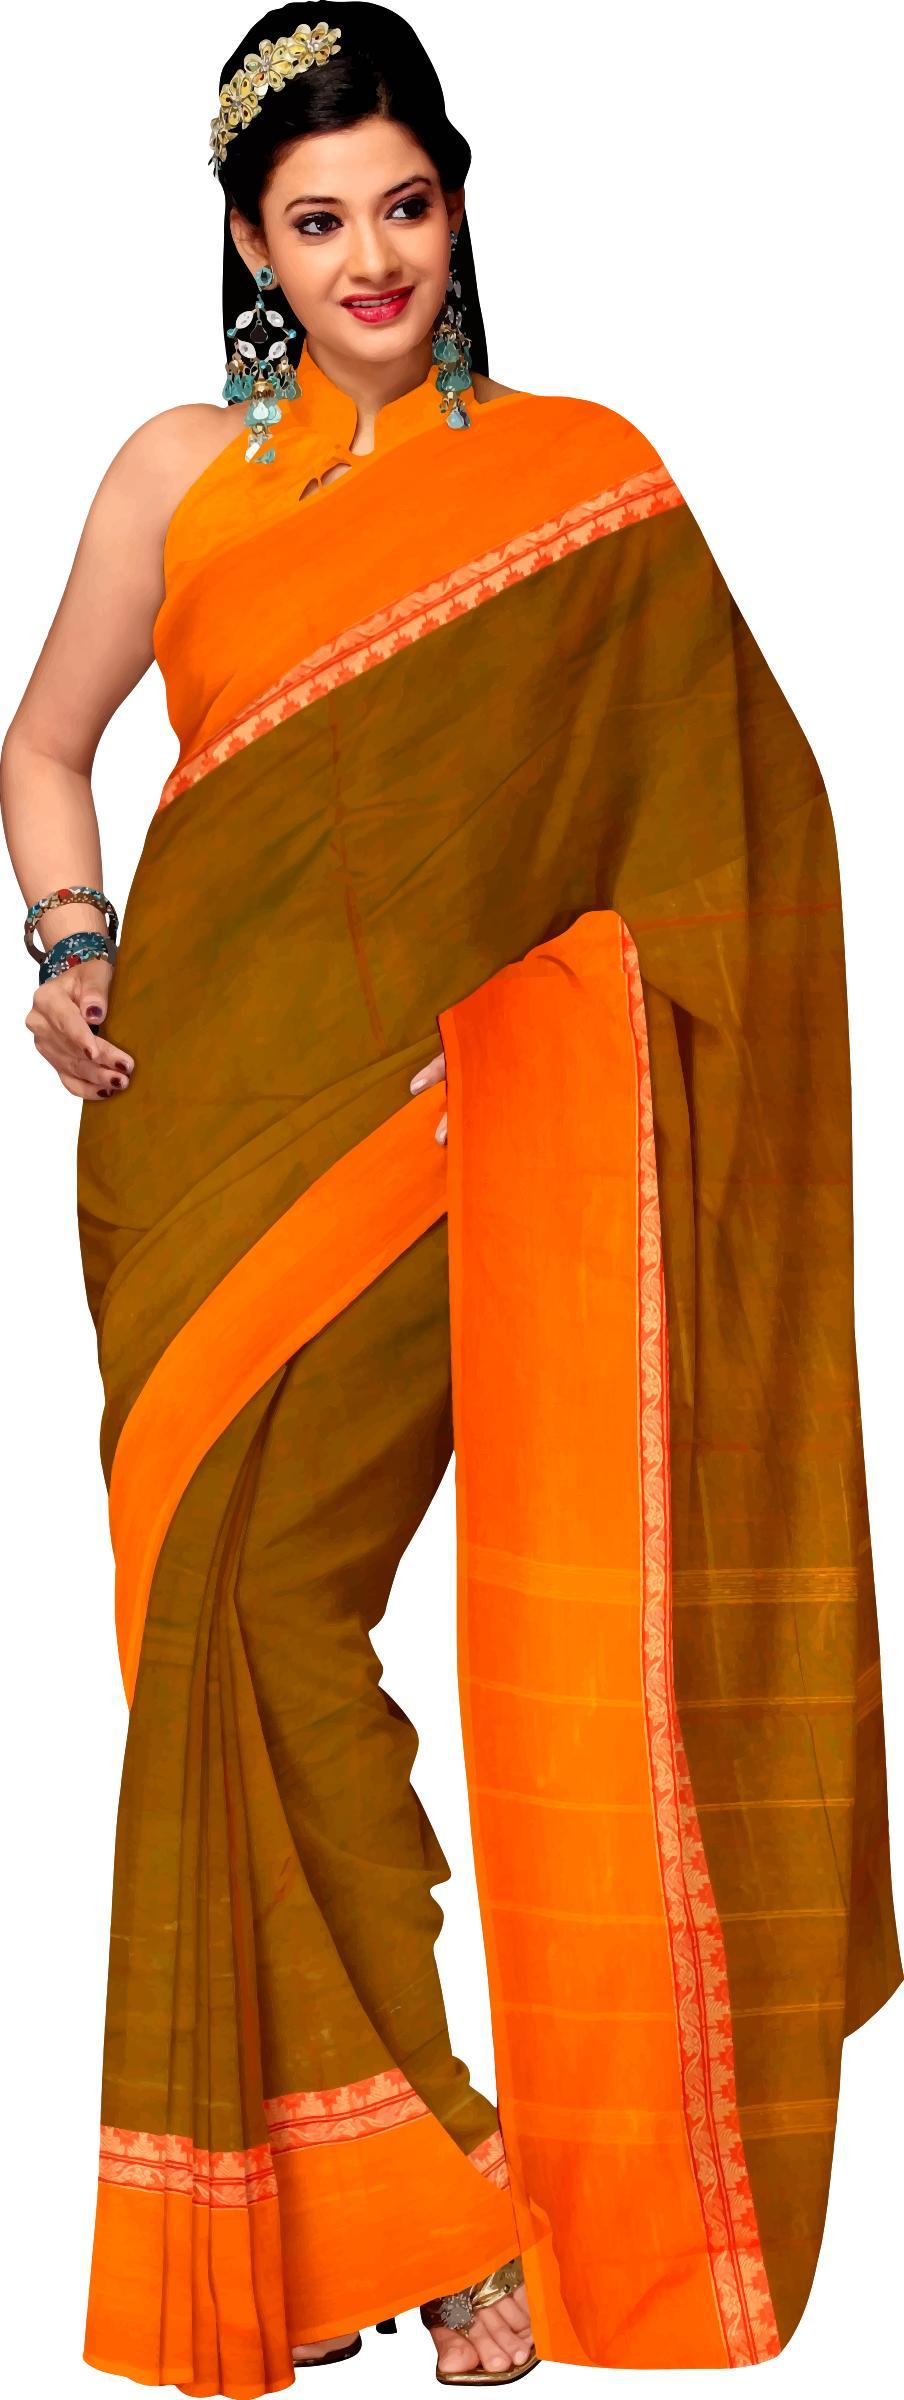 Woman in saree 4 png transparent